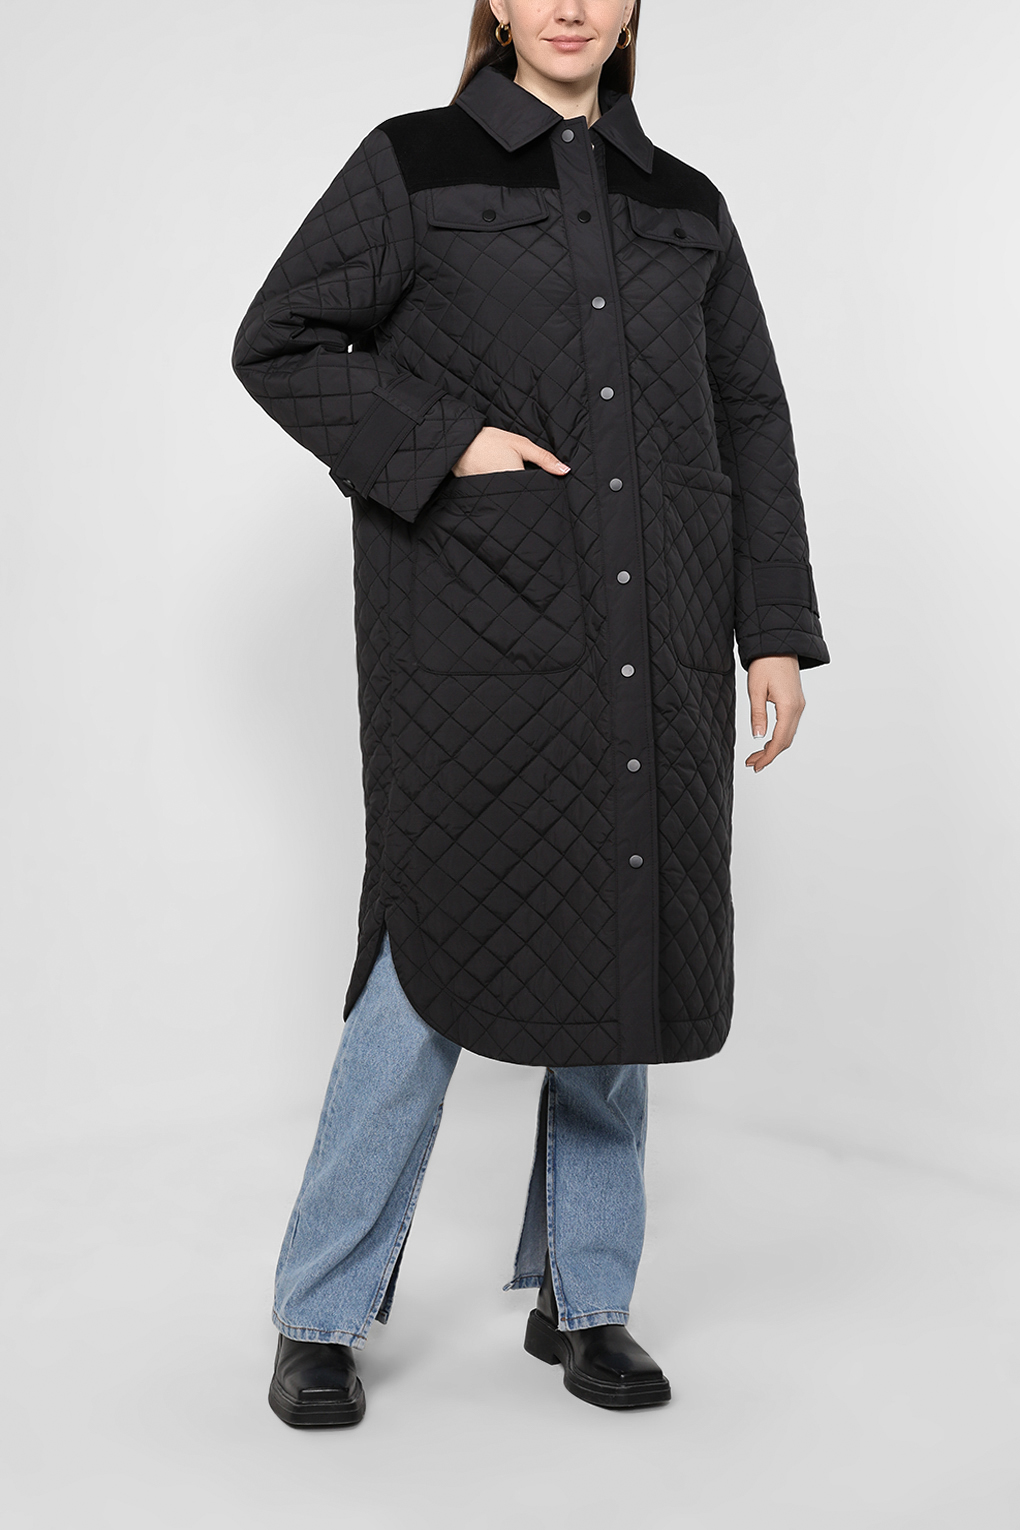 Куртка женская Esprit Collection 082EO1G382 черная M